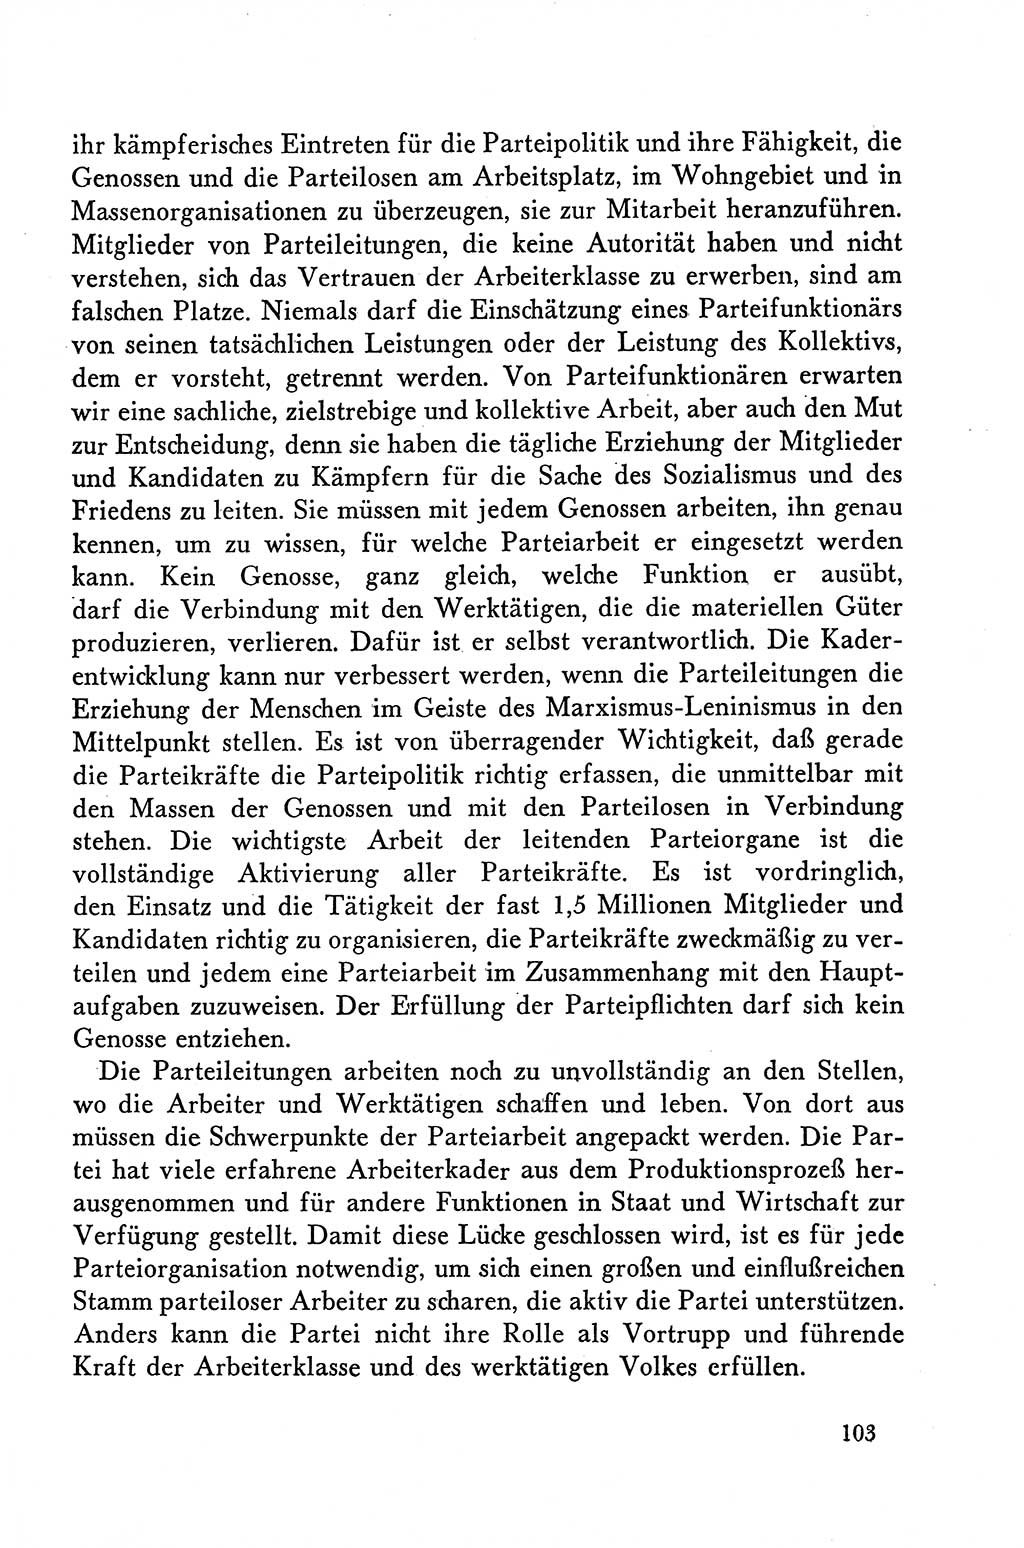 Dokumente der Sozialistischen Einheitspartei Deutschlands (SED) [Deutsche Demokratische Republik (DDR)] 1958-1959, Seite 103 (Dok. SED DDR 1958-1959, S. 103)